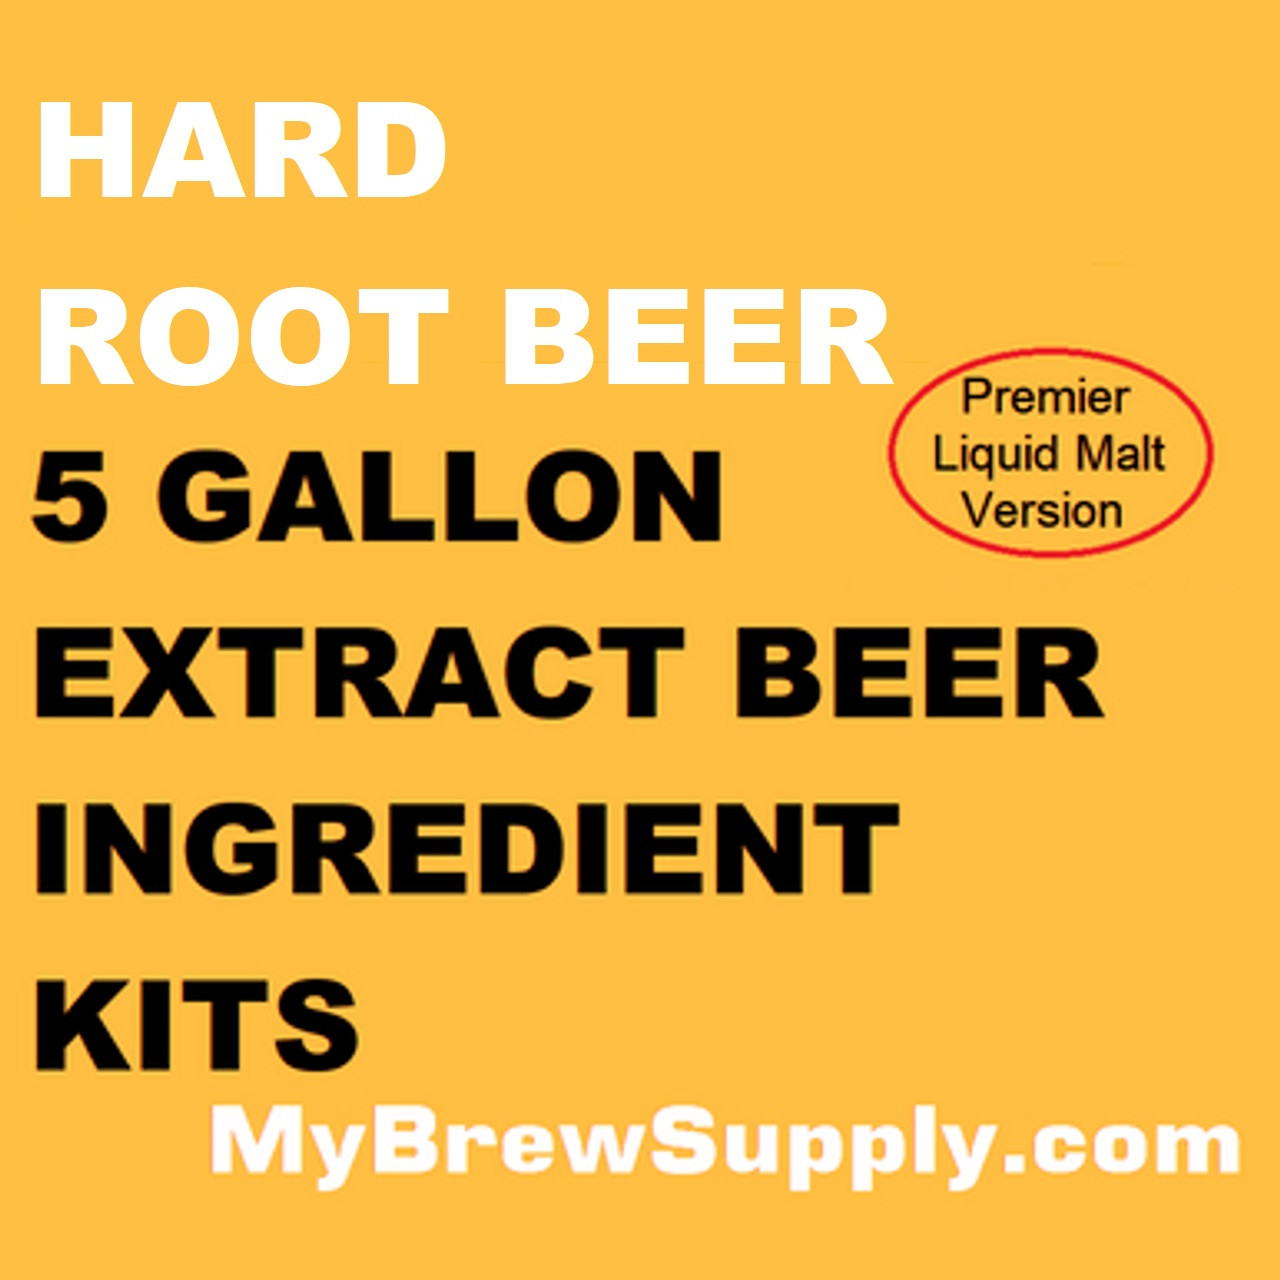 Root Beer Kit